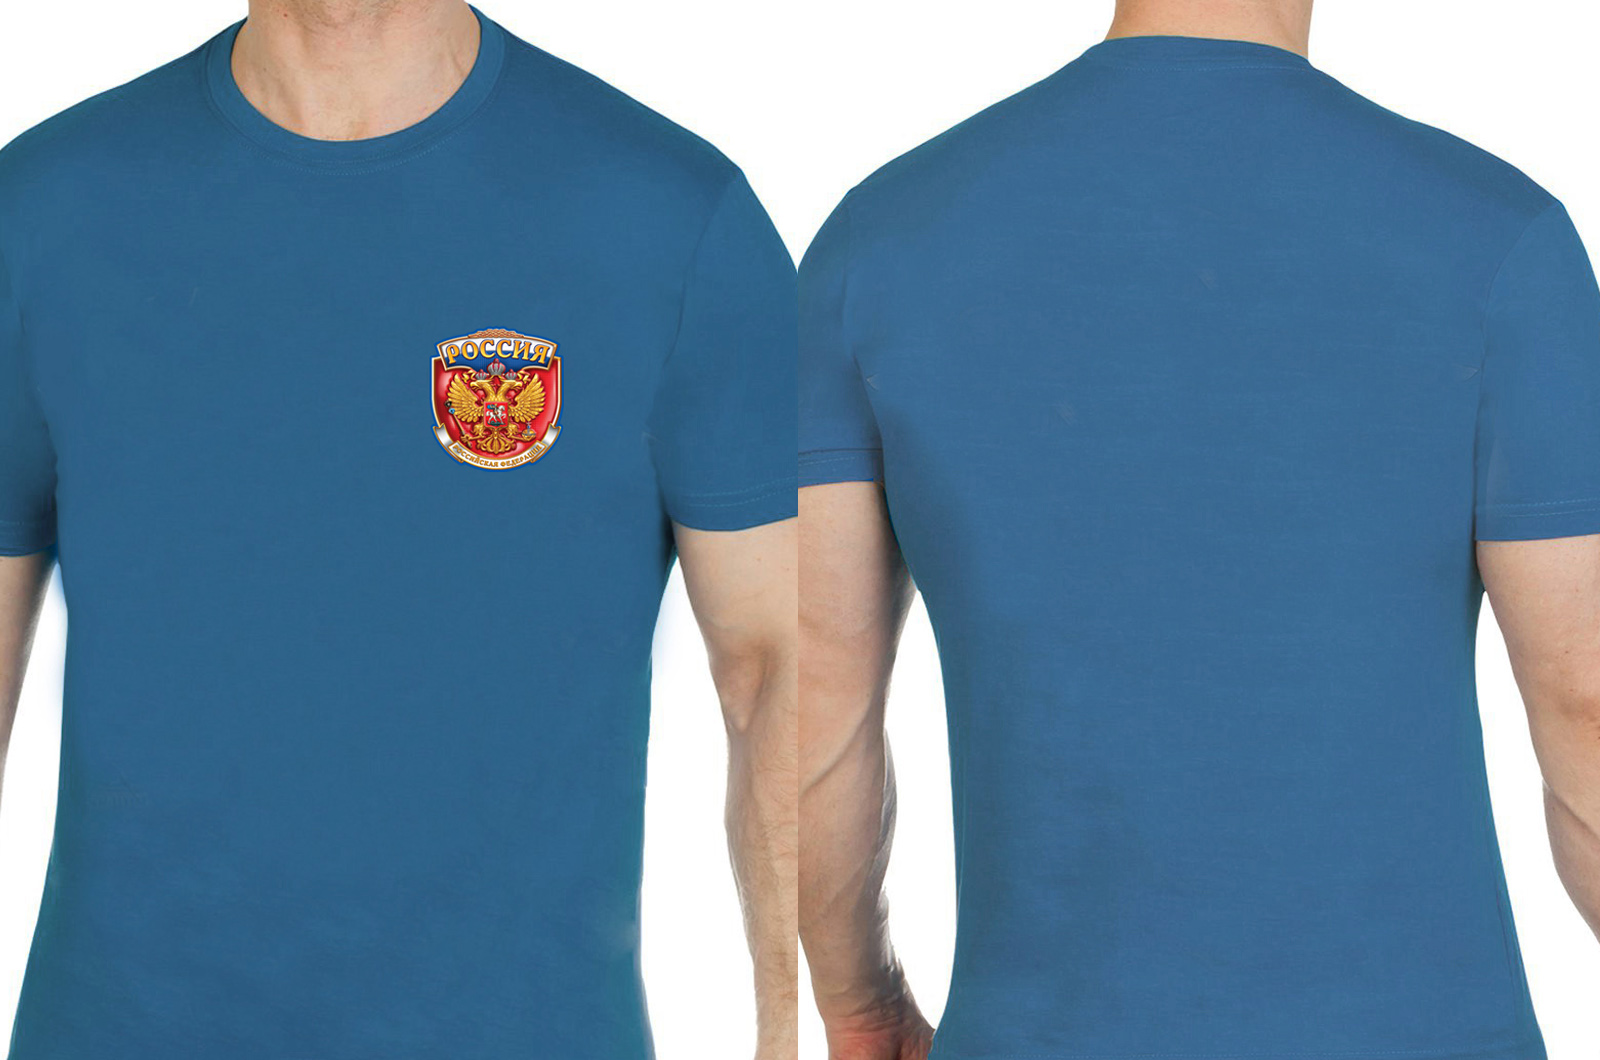 Патриотическая футболка с символикой Россия. 